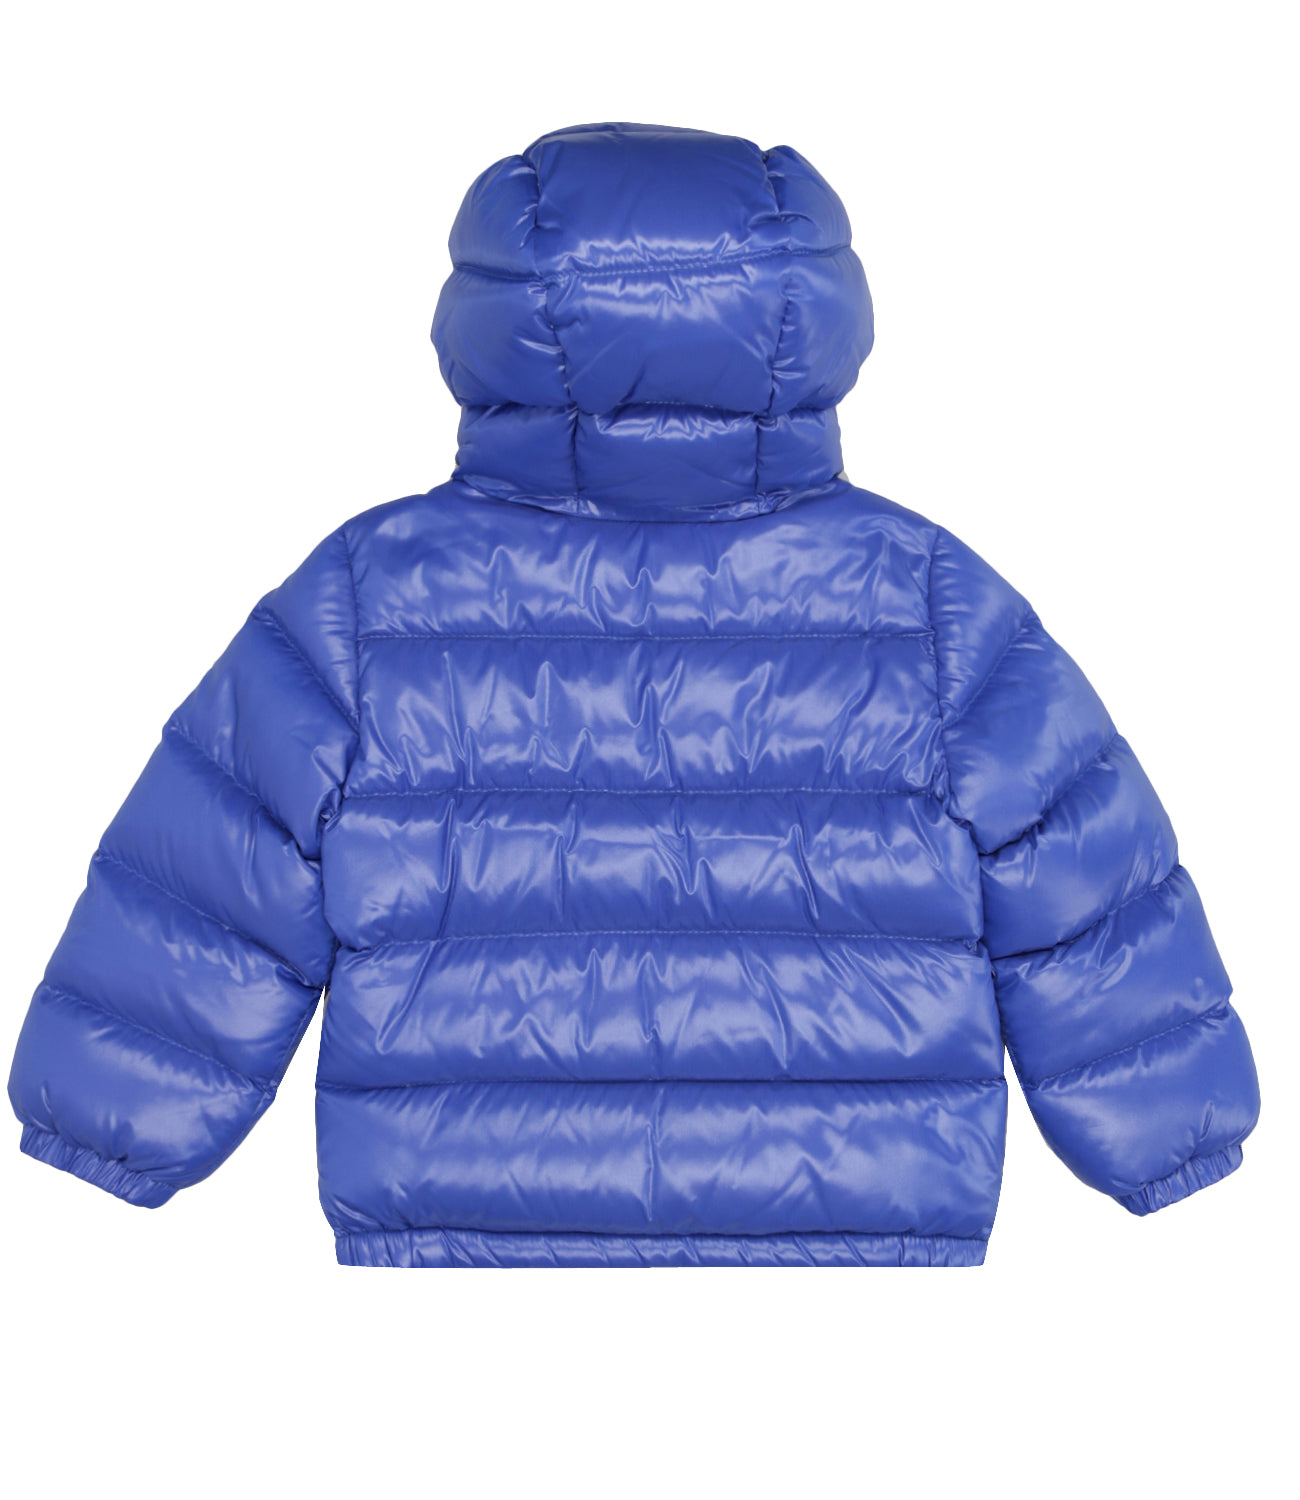 Moncler Junior | Arslan jacket navy blue